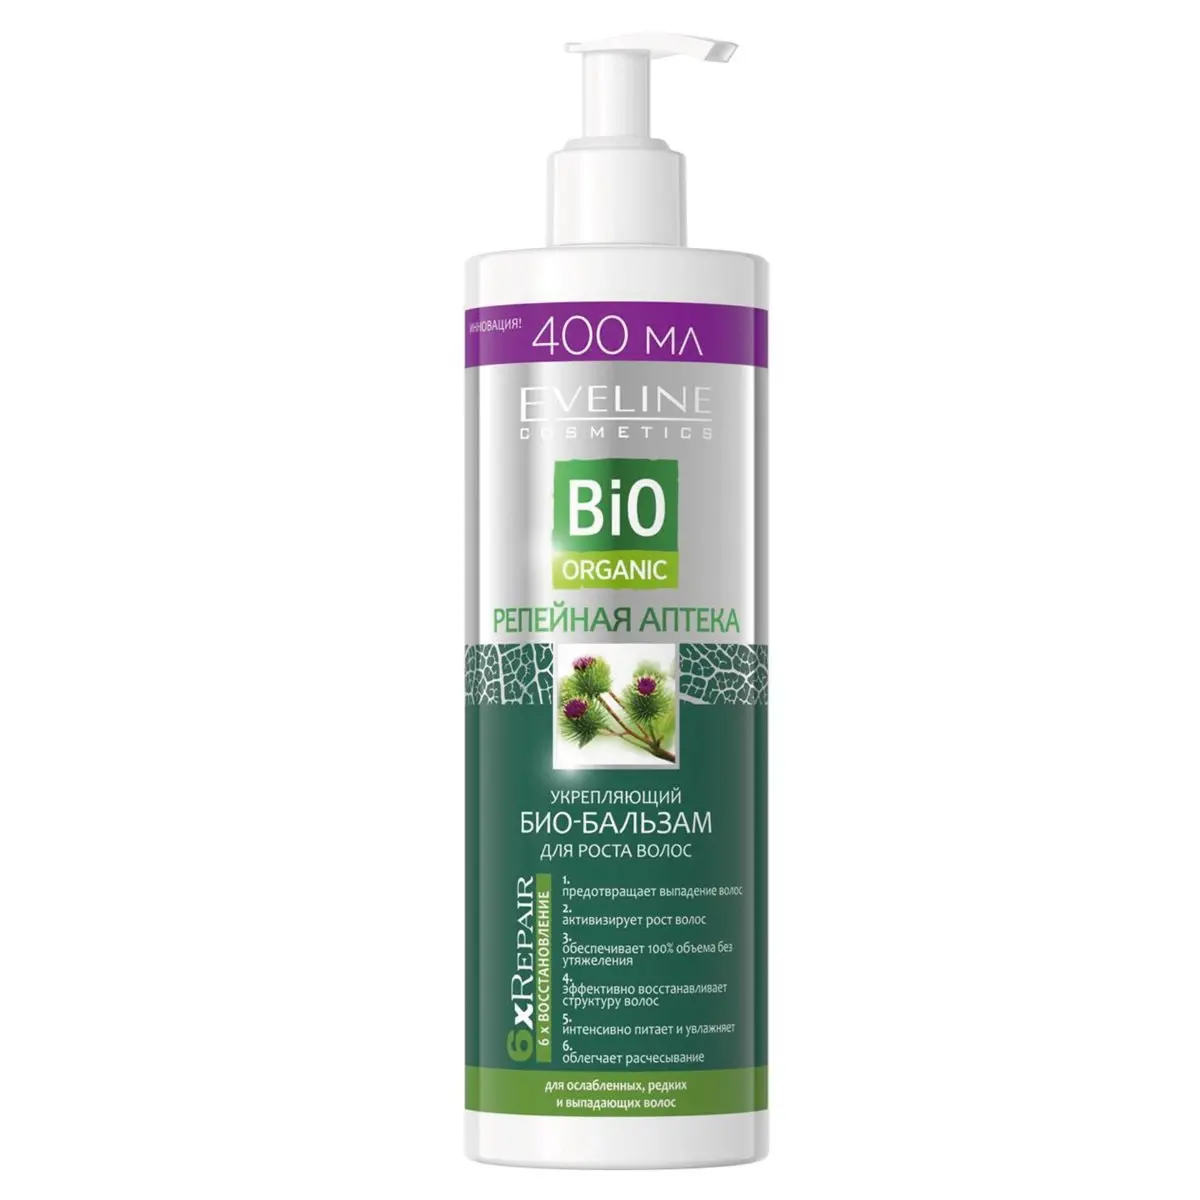 Укрепляющий био-бальзам для роста волос Eveline Репейная Аптека Bio Organic, 400 мл (B400BOOD)